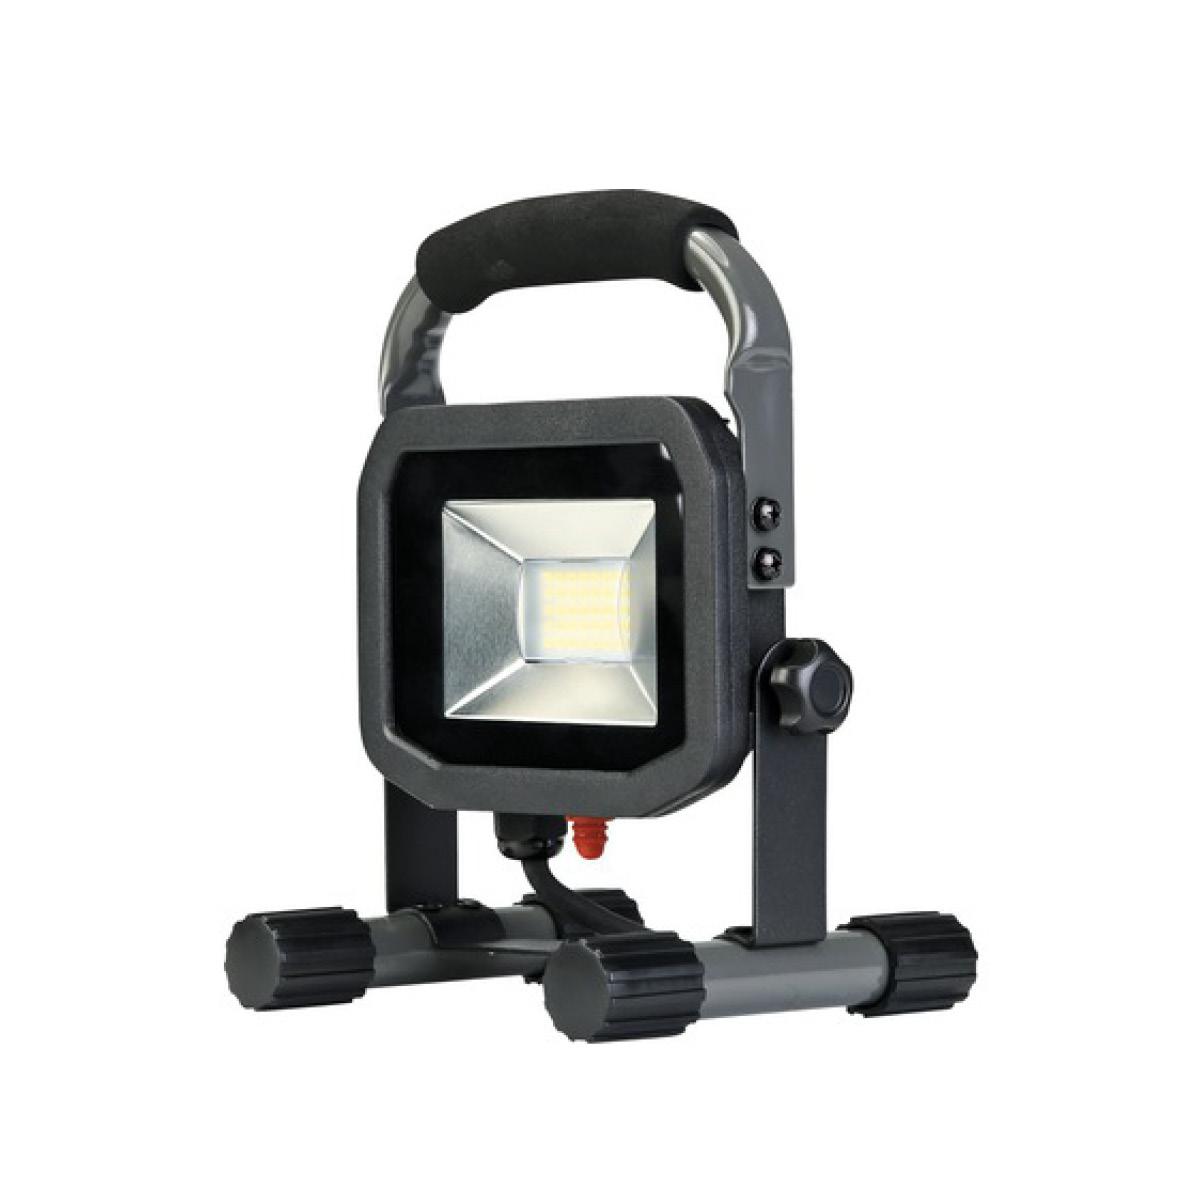 Luceco LED Strahler IP65 22W 1800lm 5000K neutralweiß schwarz/grau